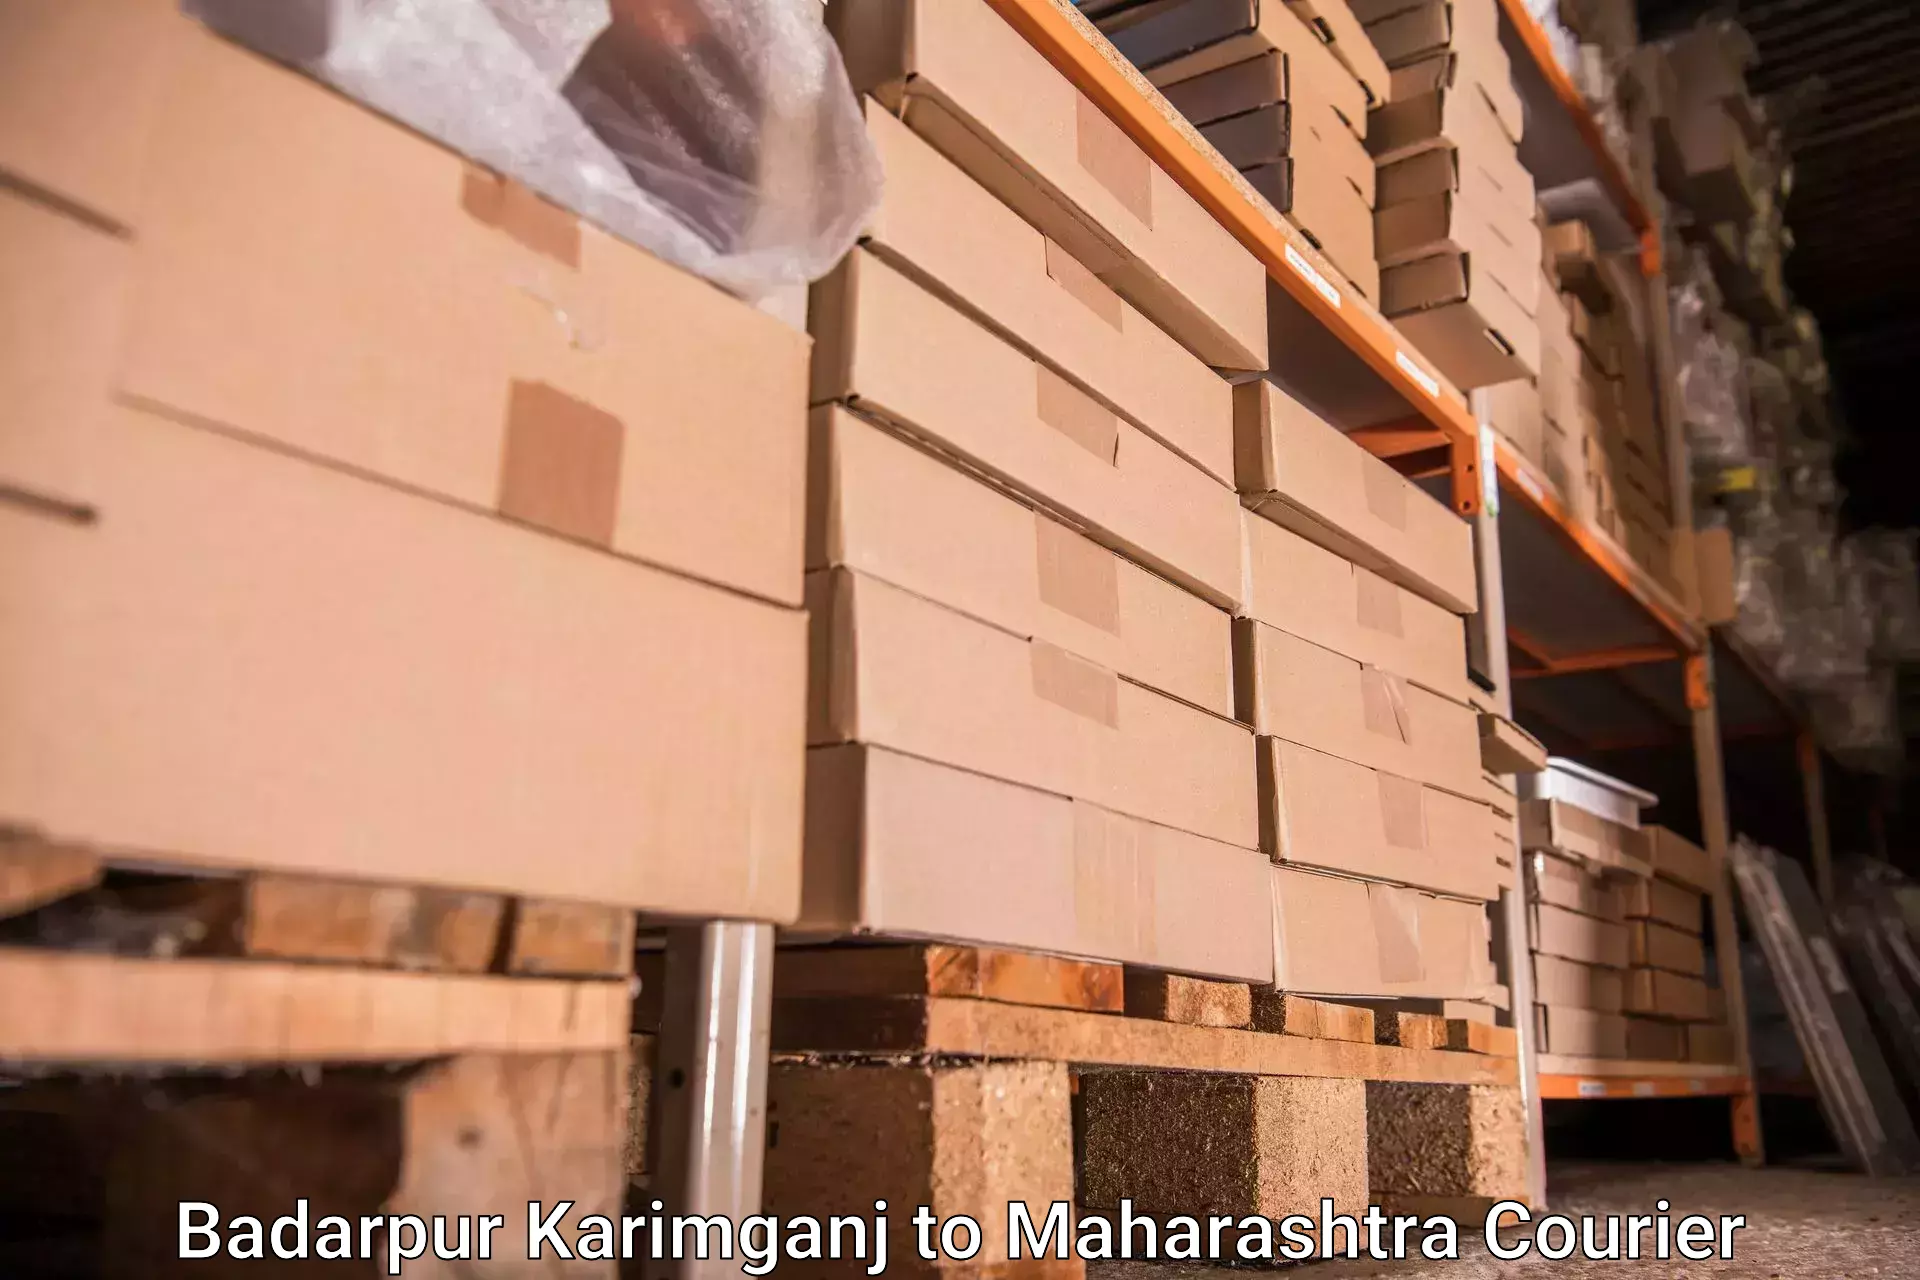 Luggage delivery network Badarpur Karimganj to Nanded